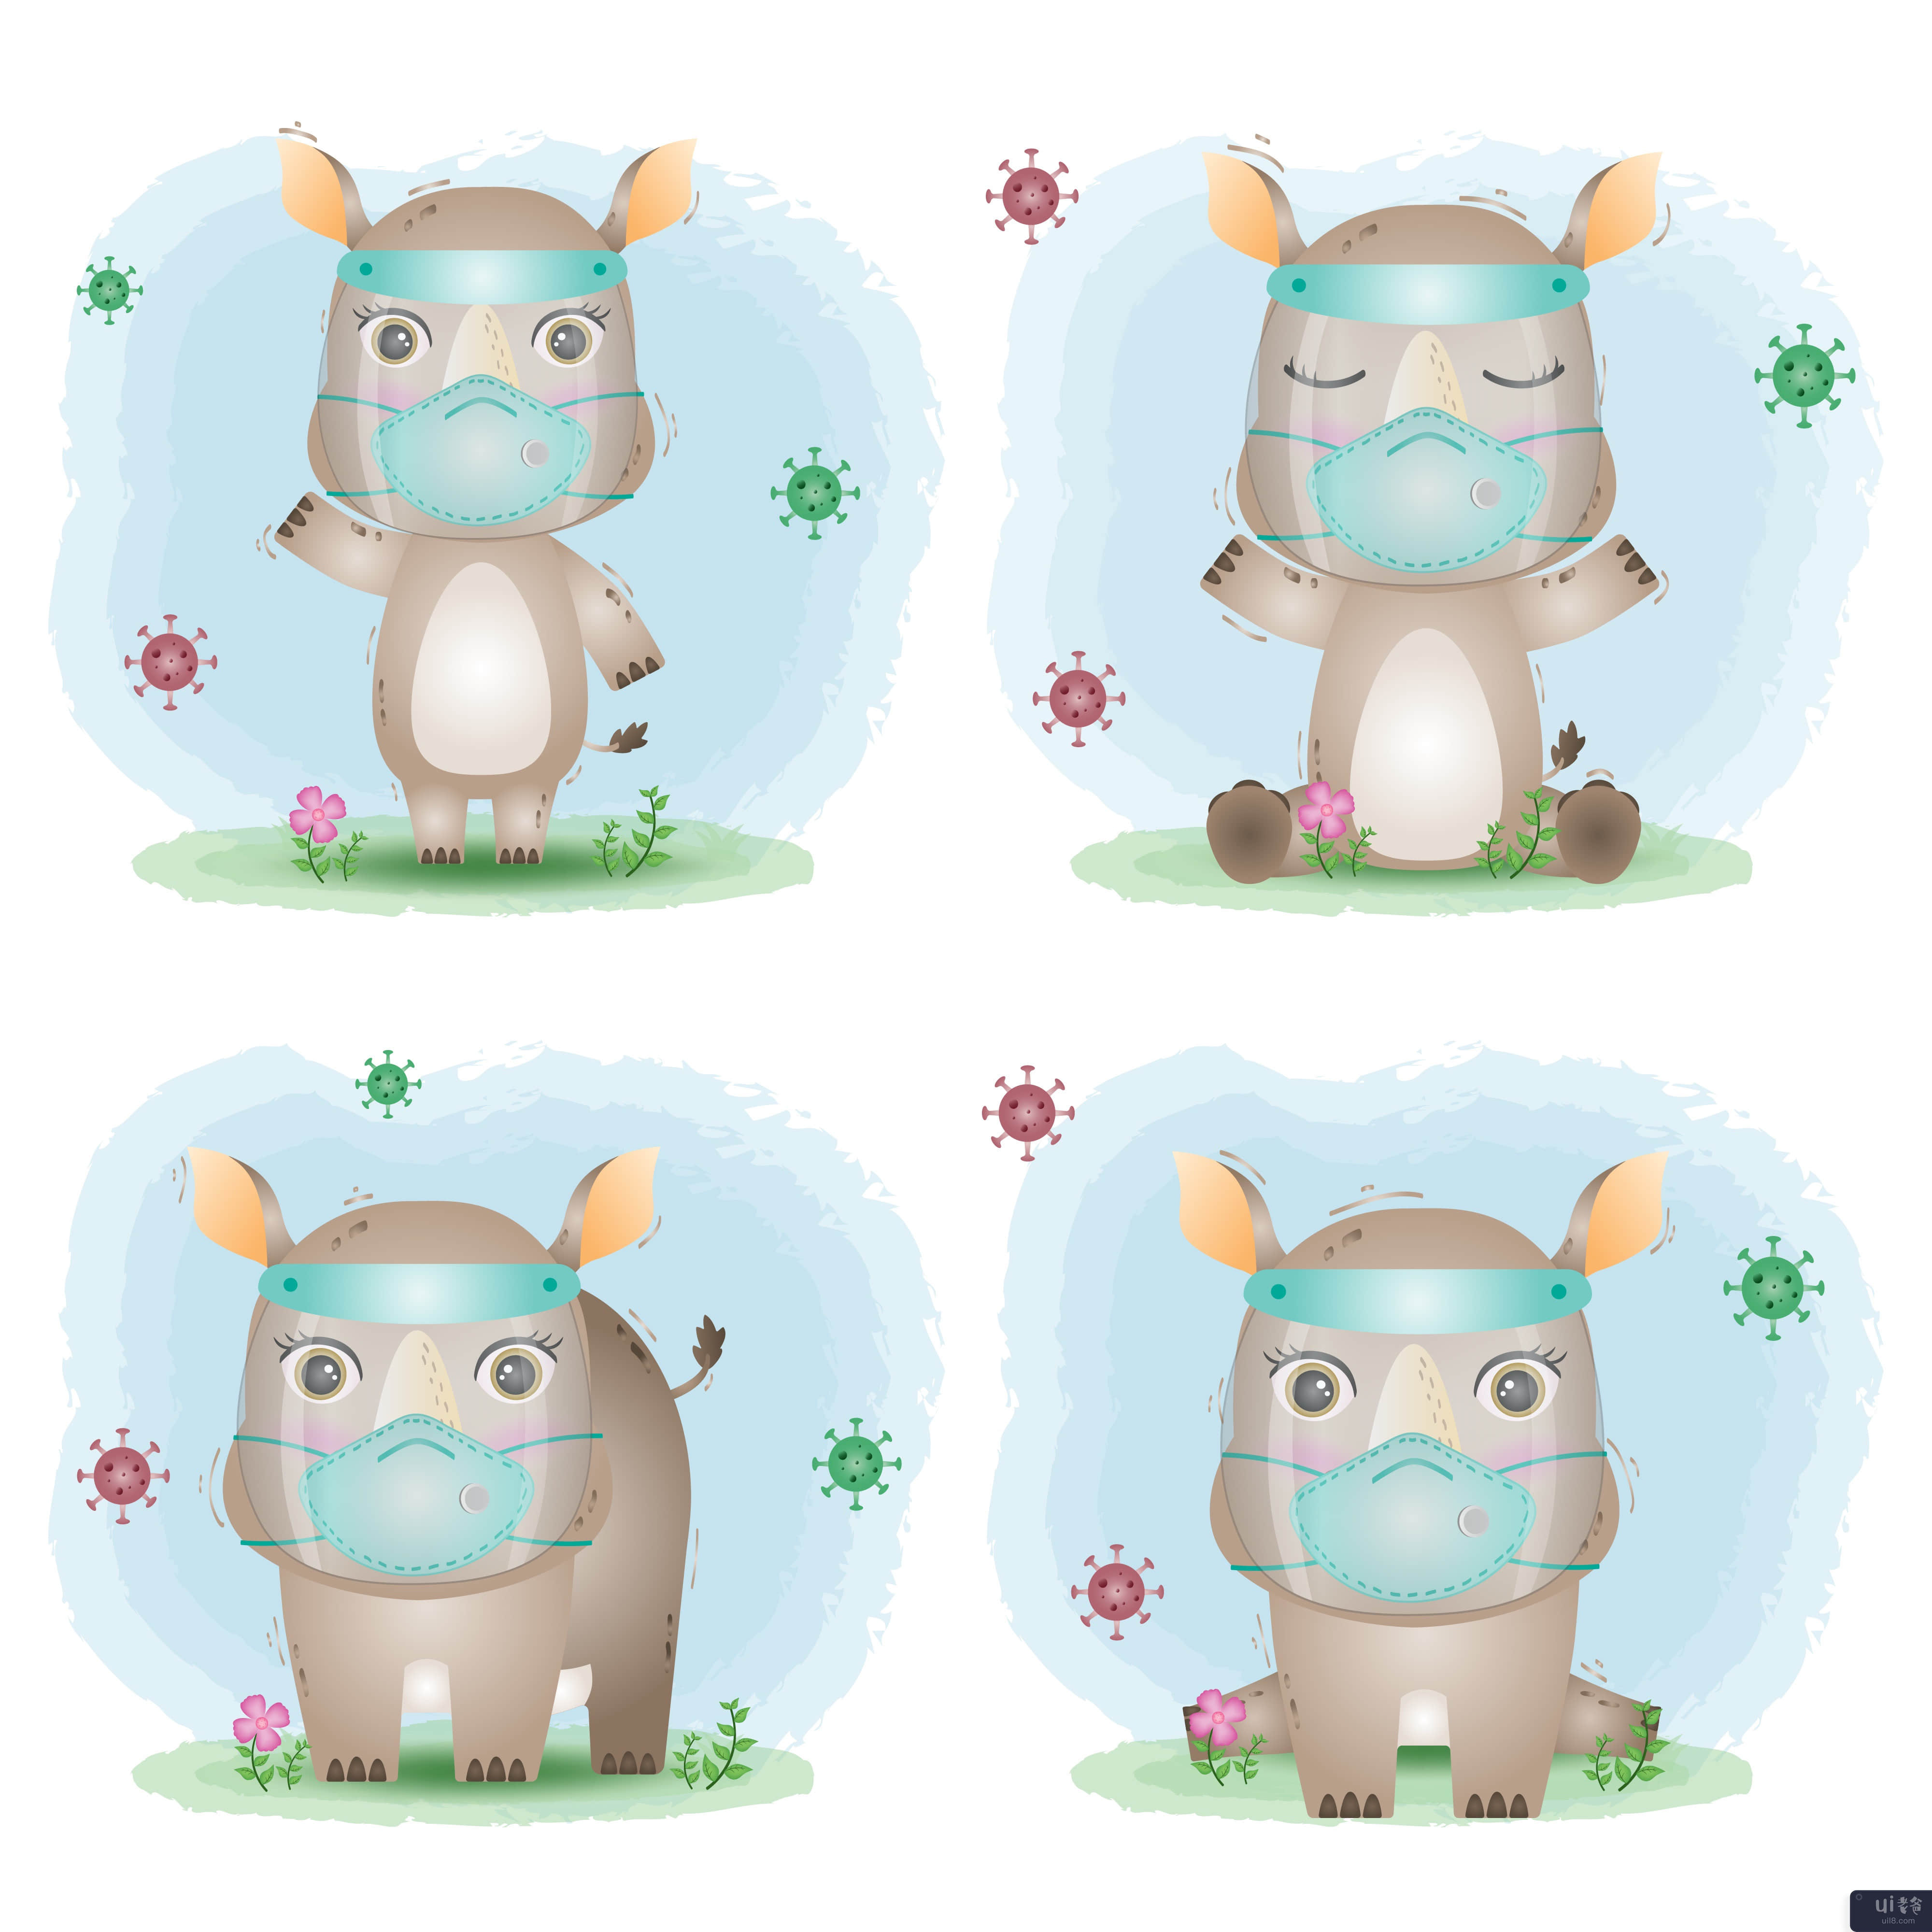 使用面罩和面具系列的可爱犀牛(cute rhino using face shield and mask collection)插图